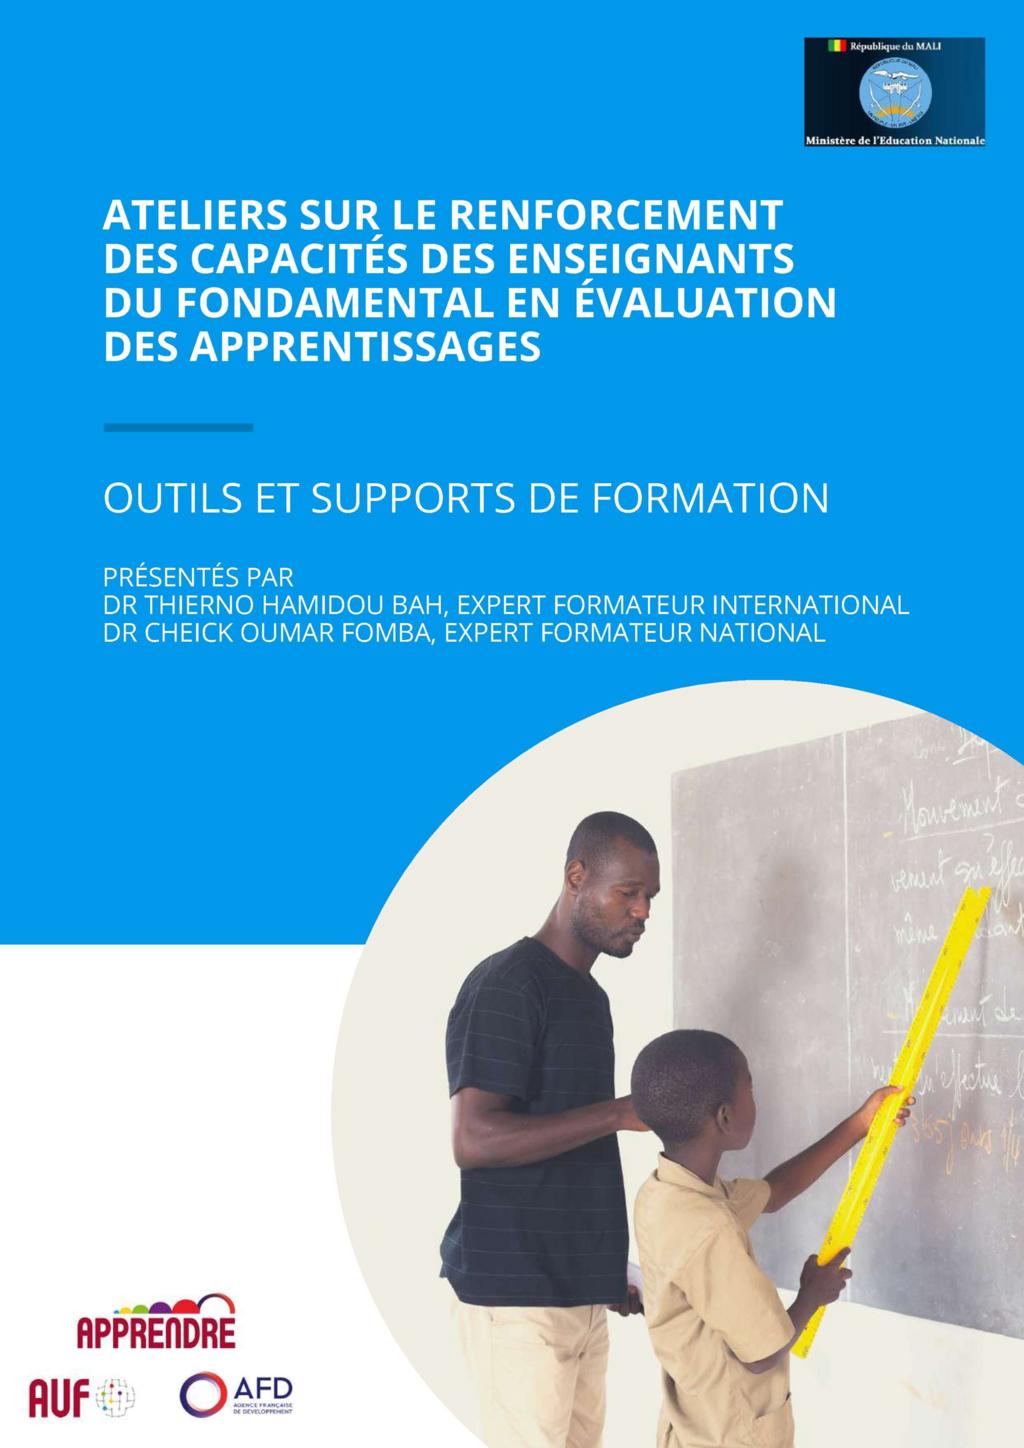 PDF) Correction d'article evaluation des compétences en formation